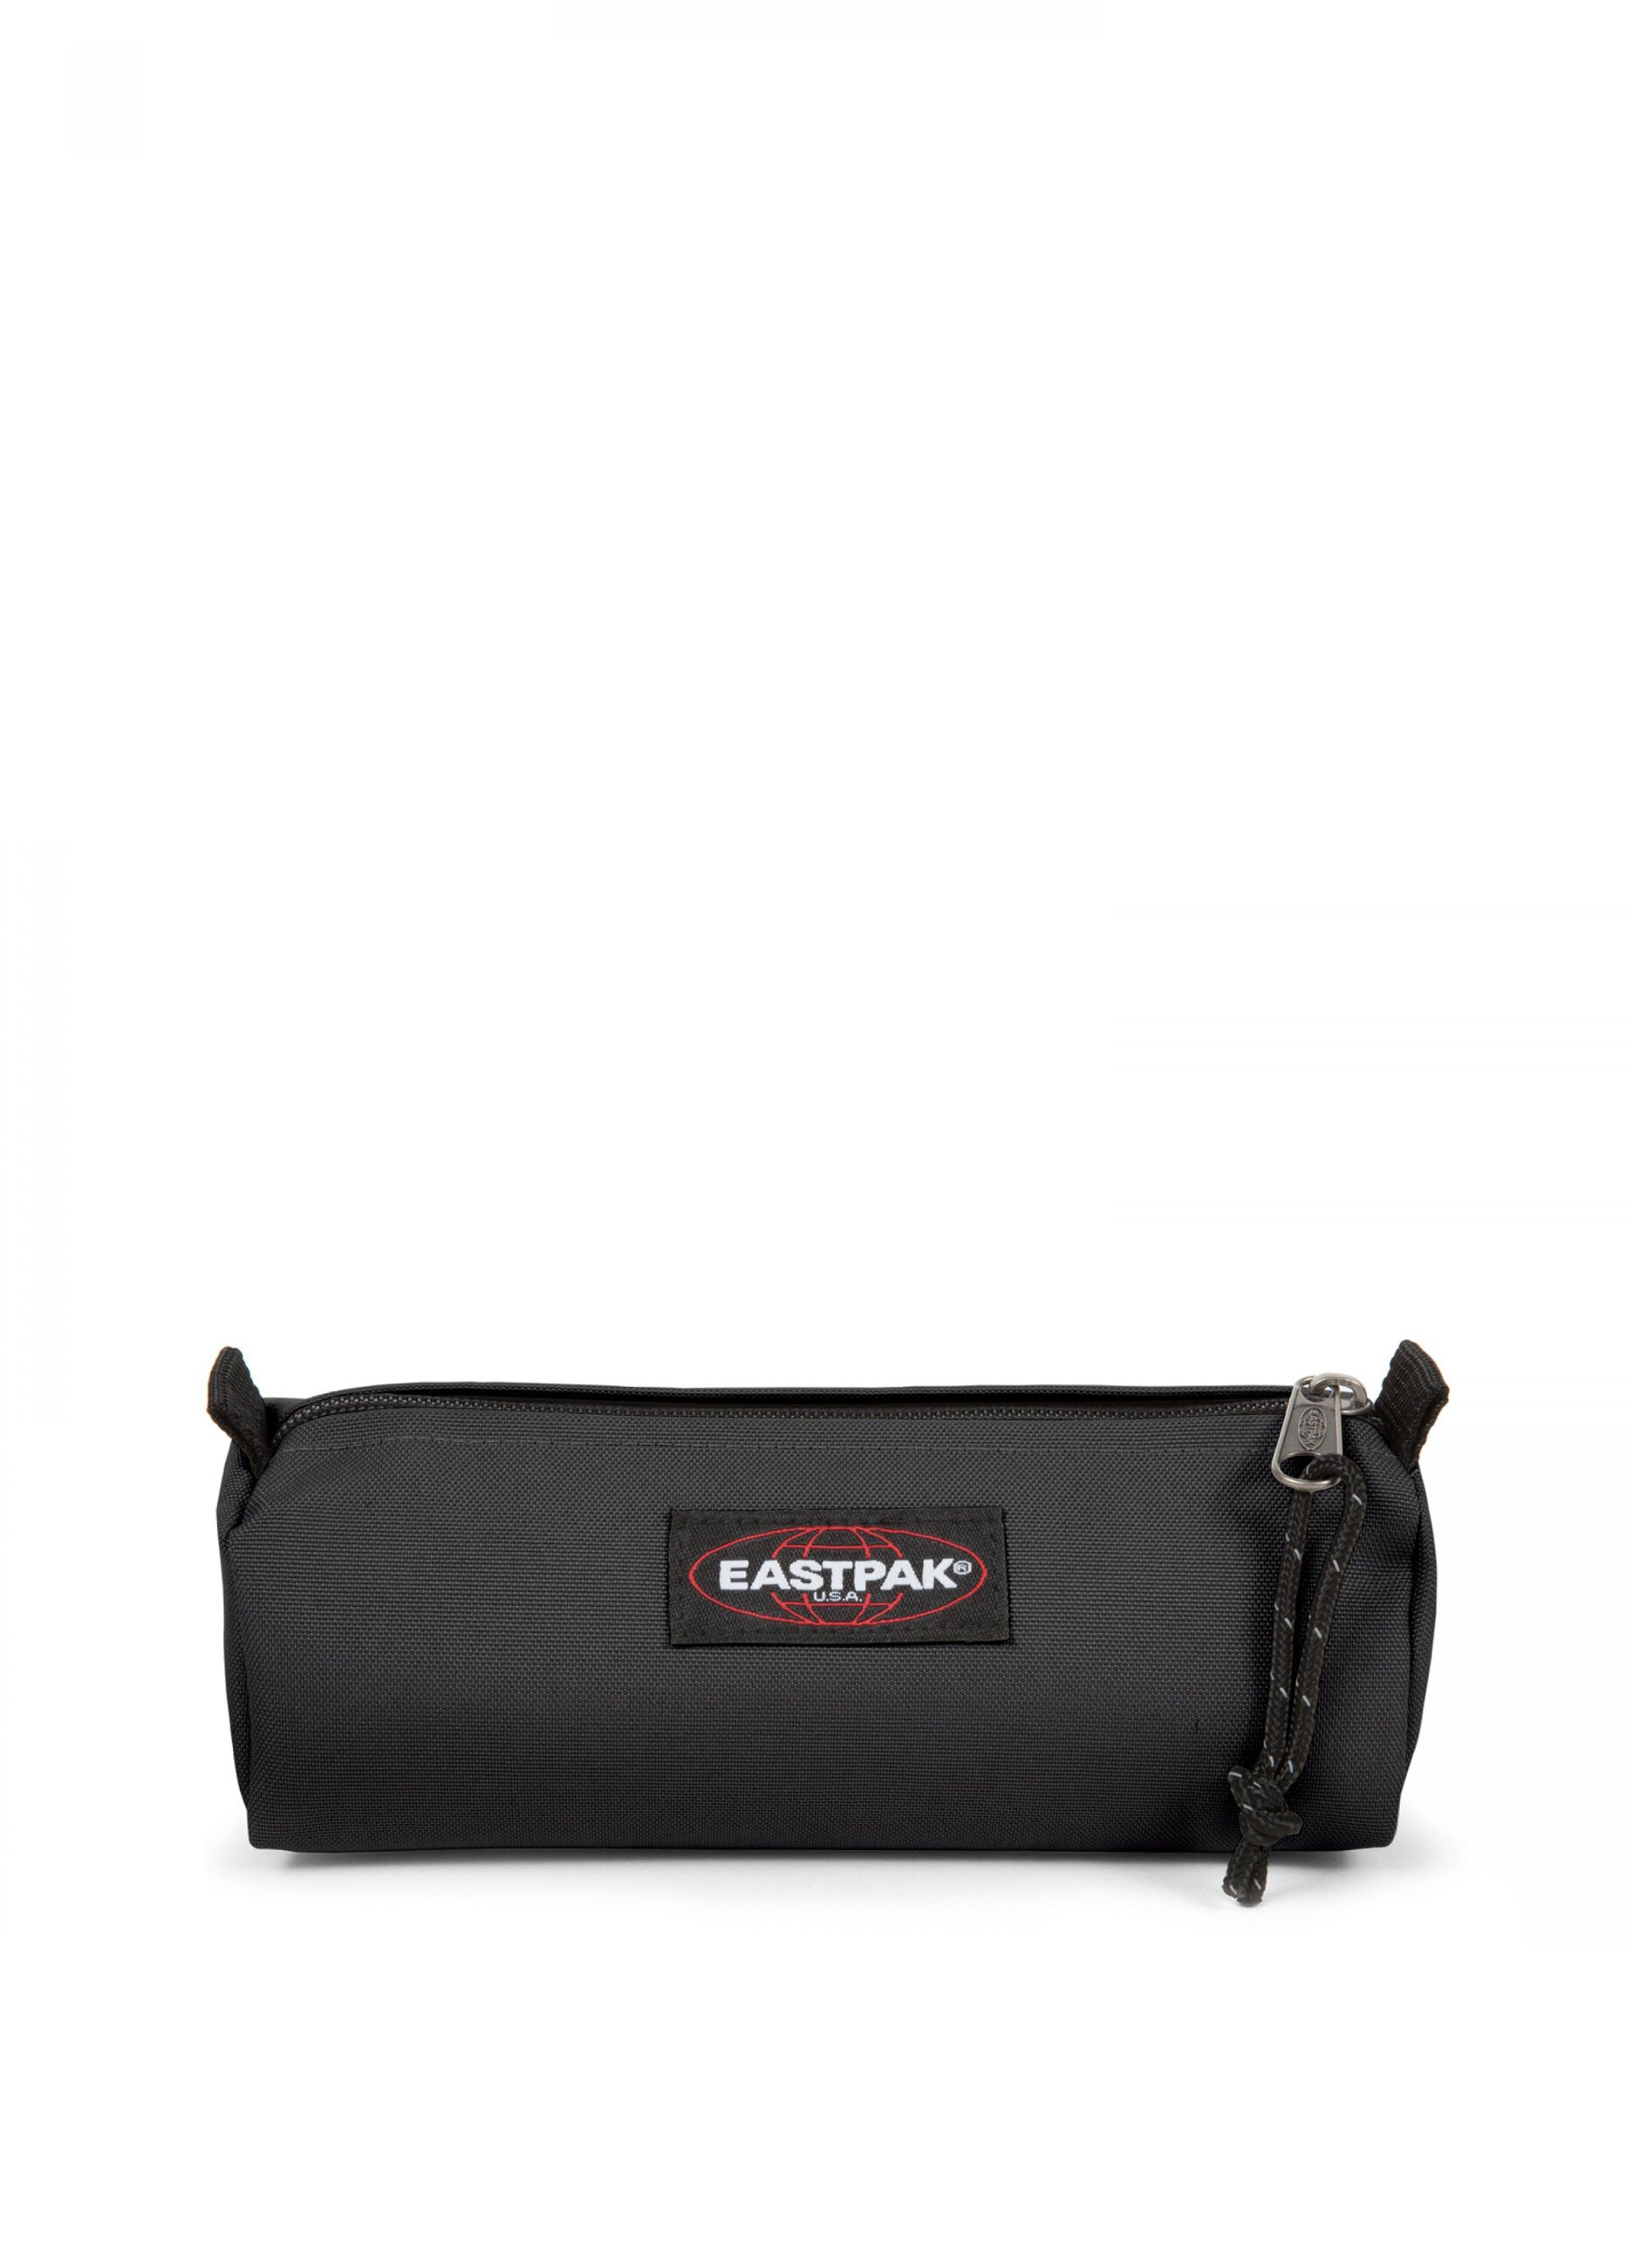 Eastpak pencil case